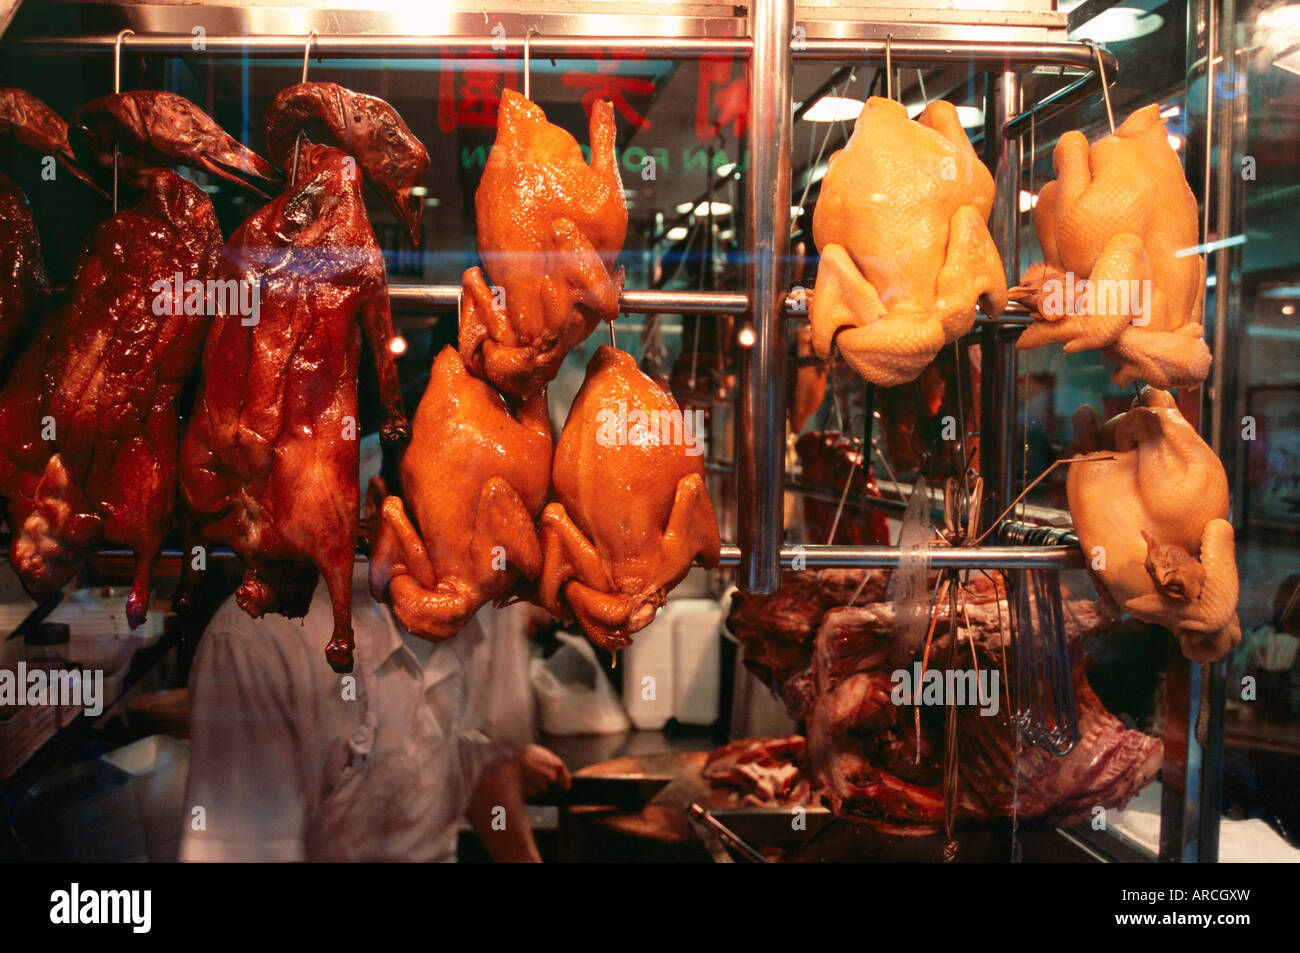 Cuocere anatra alla pechinese visualizzato nella finestra del ristorante, Hong Kong, Cina, Asia Foto Stock